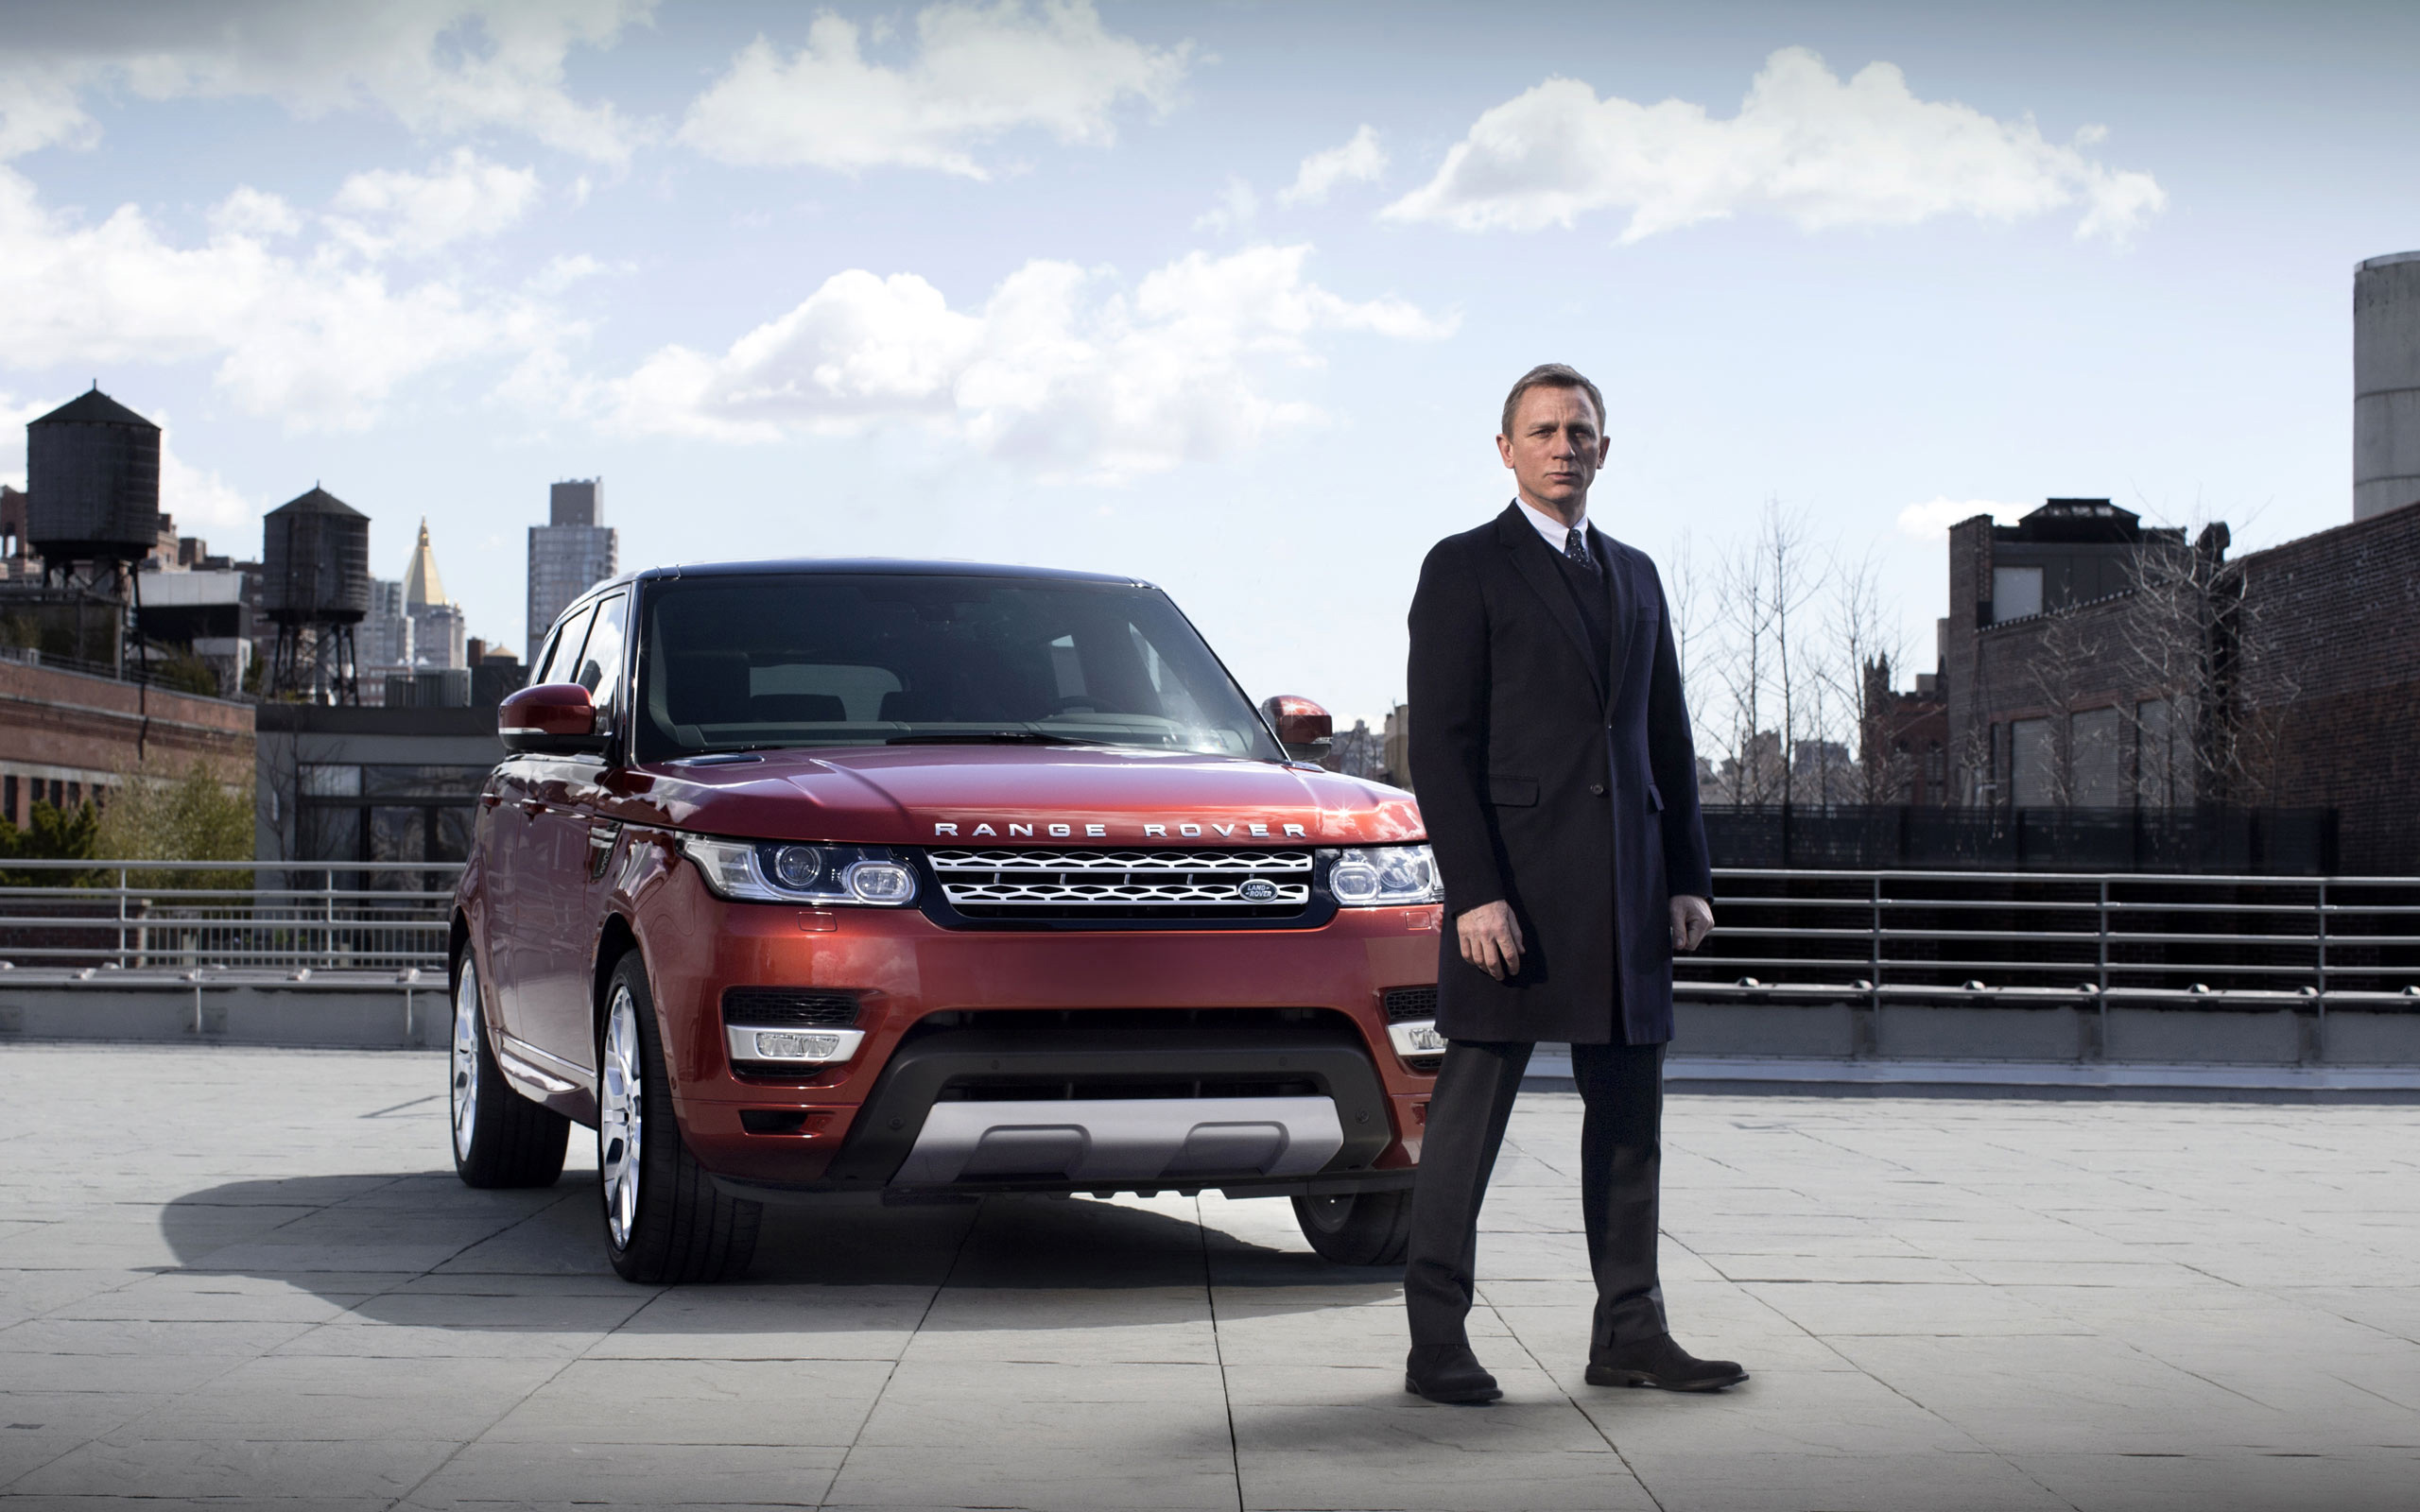 James Bond Range Rover Sport All For